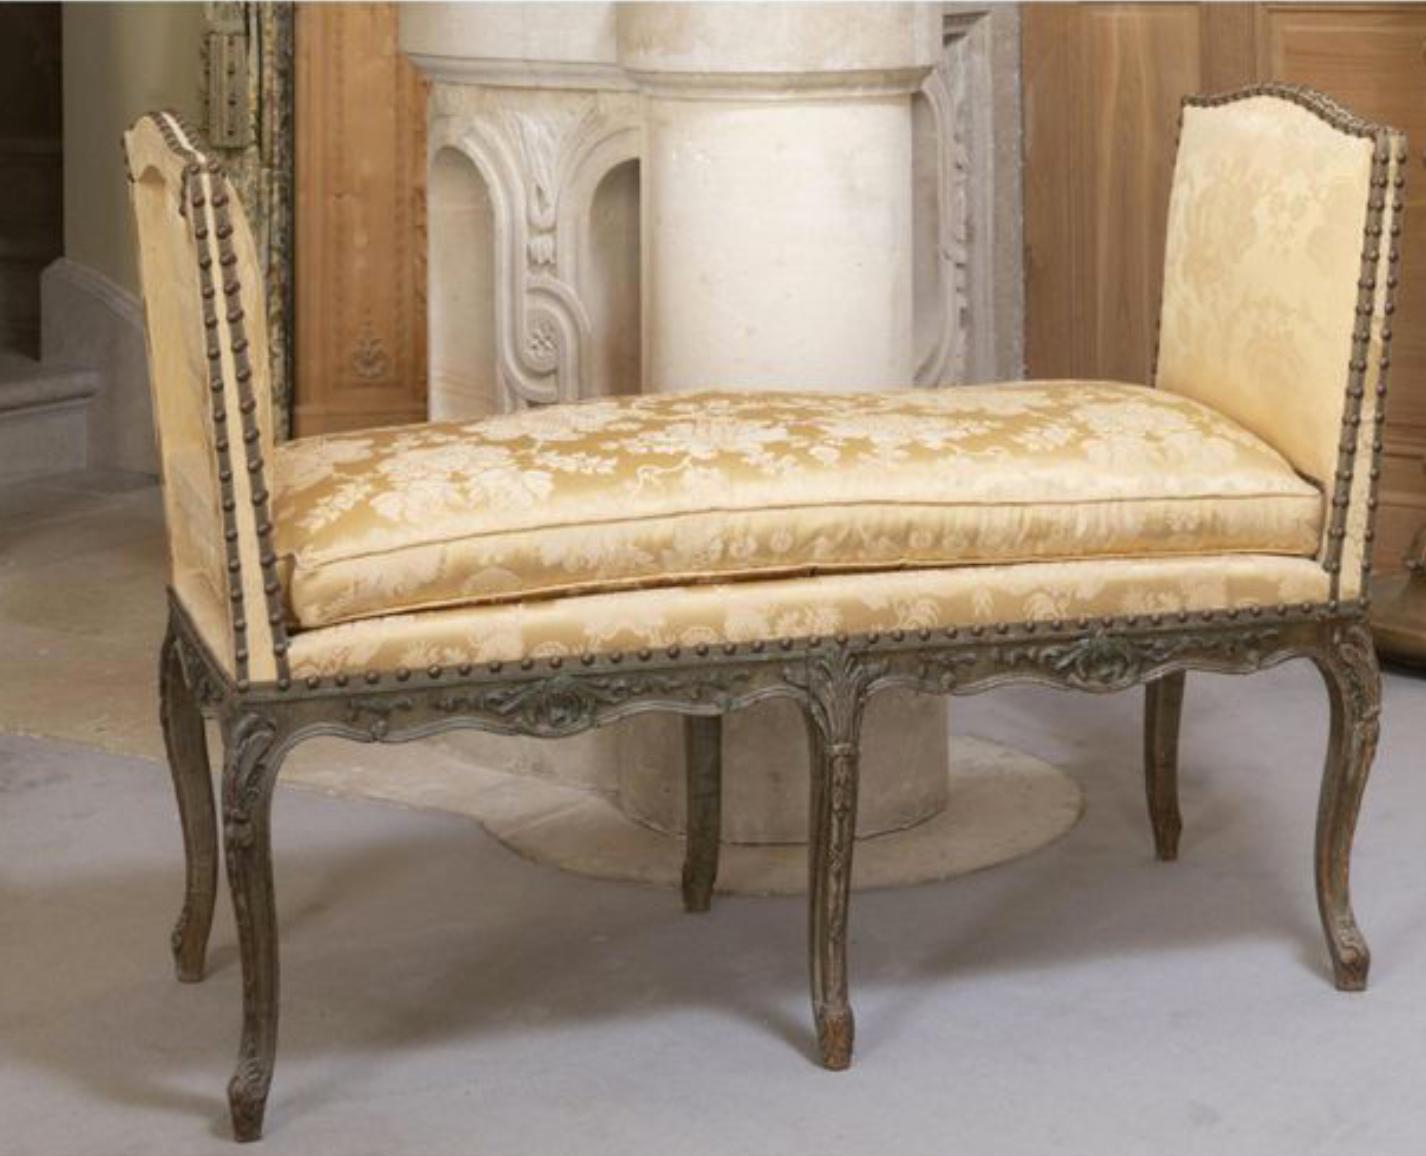 Handbemalte olivgrüne Bank im französischen Louis XV-Stil. Das Möbelstück steht auf sechs handgeschnitzten, geschwungenen Beinen und ist mit hellgelbem Seidenstoff gepolstert. Sehr komfortable und stabile Struktur.
Frankreich, um 1870.